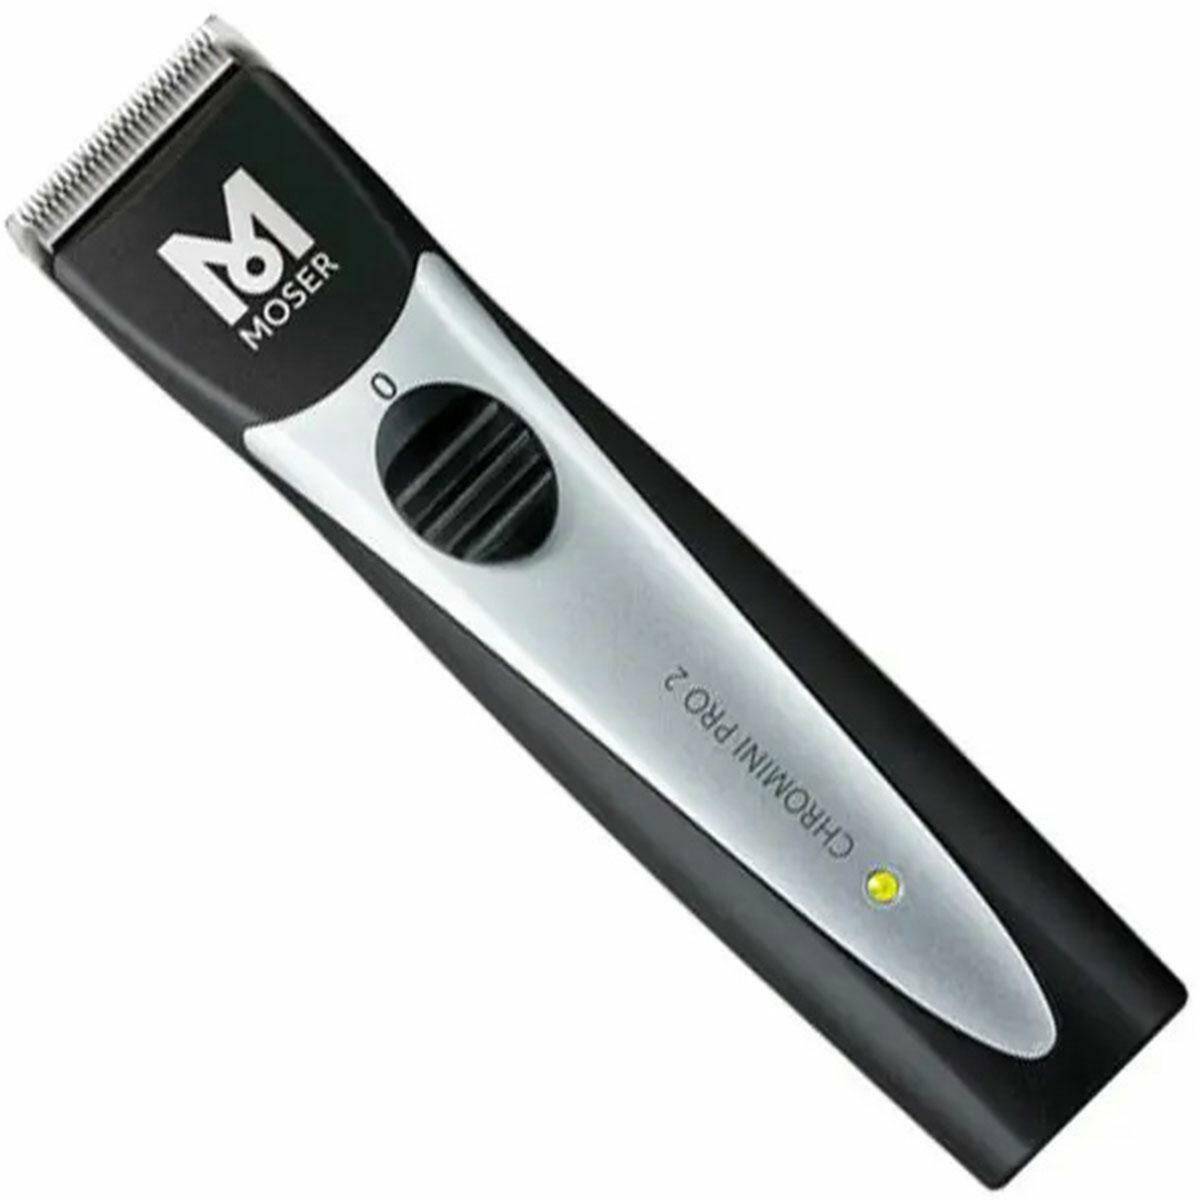 Moser 1591 ChroMini Pro 2 bezprzewodowa maszynka / trymer do włosów, brody i wąsów